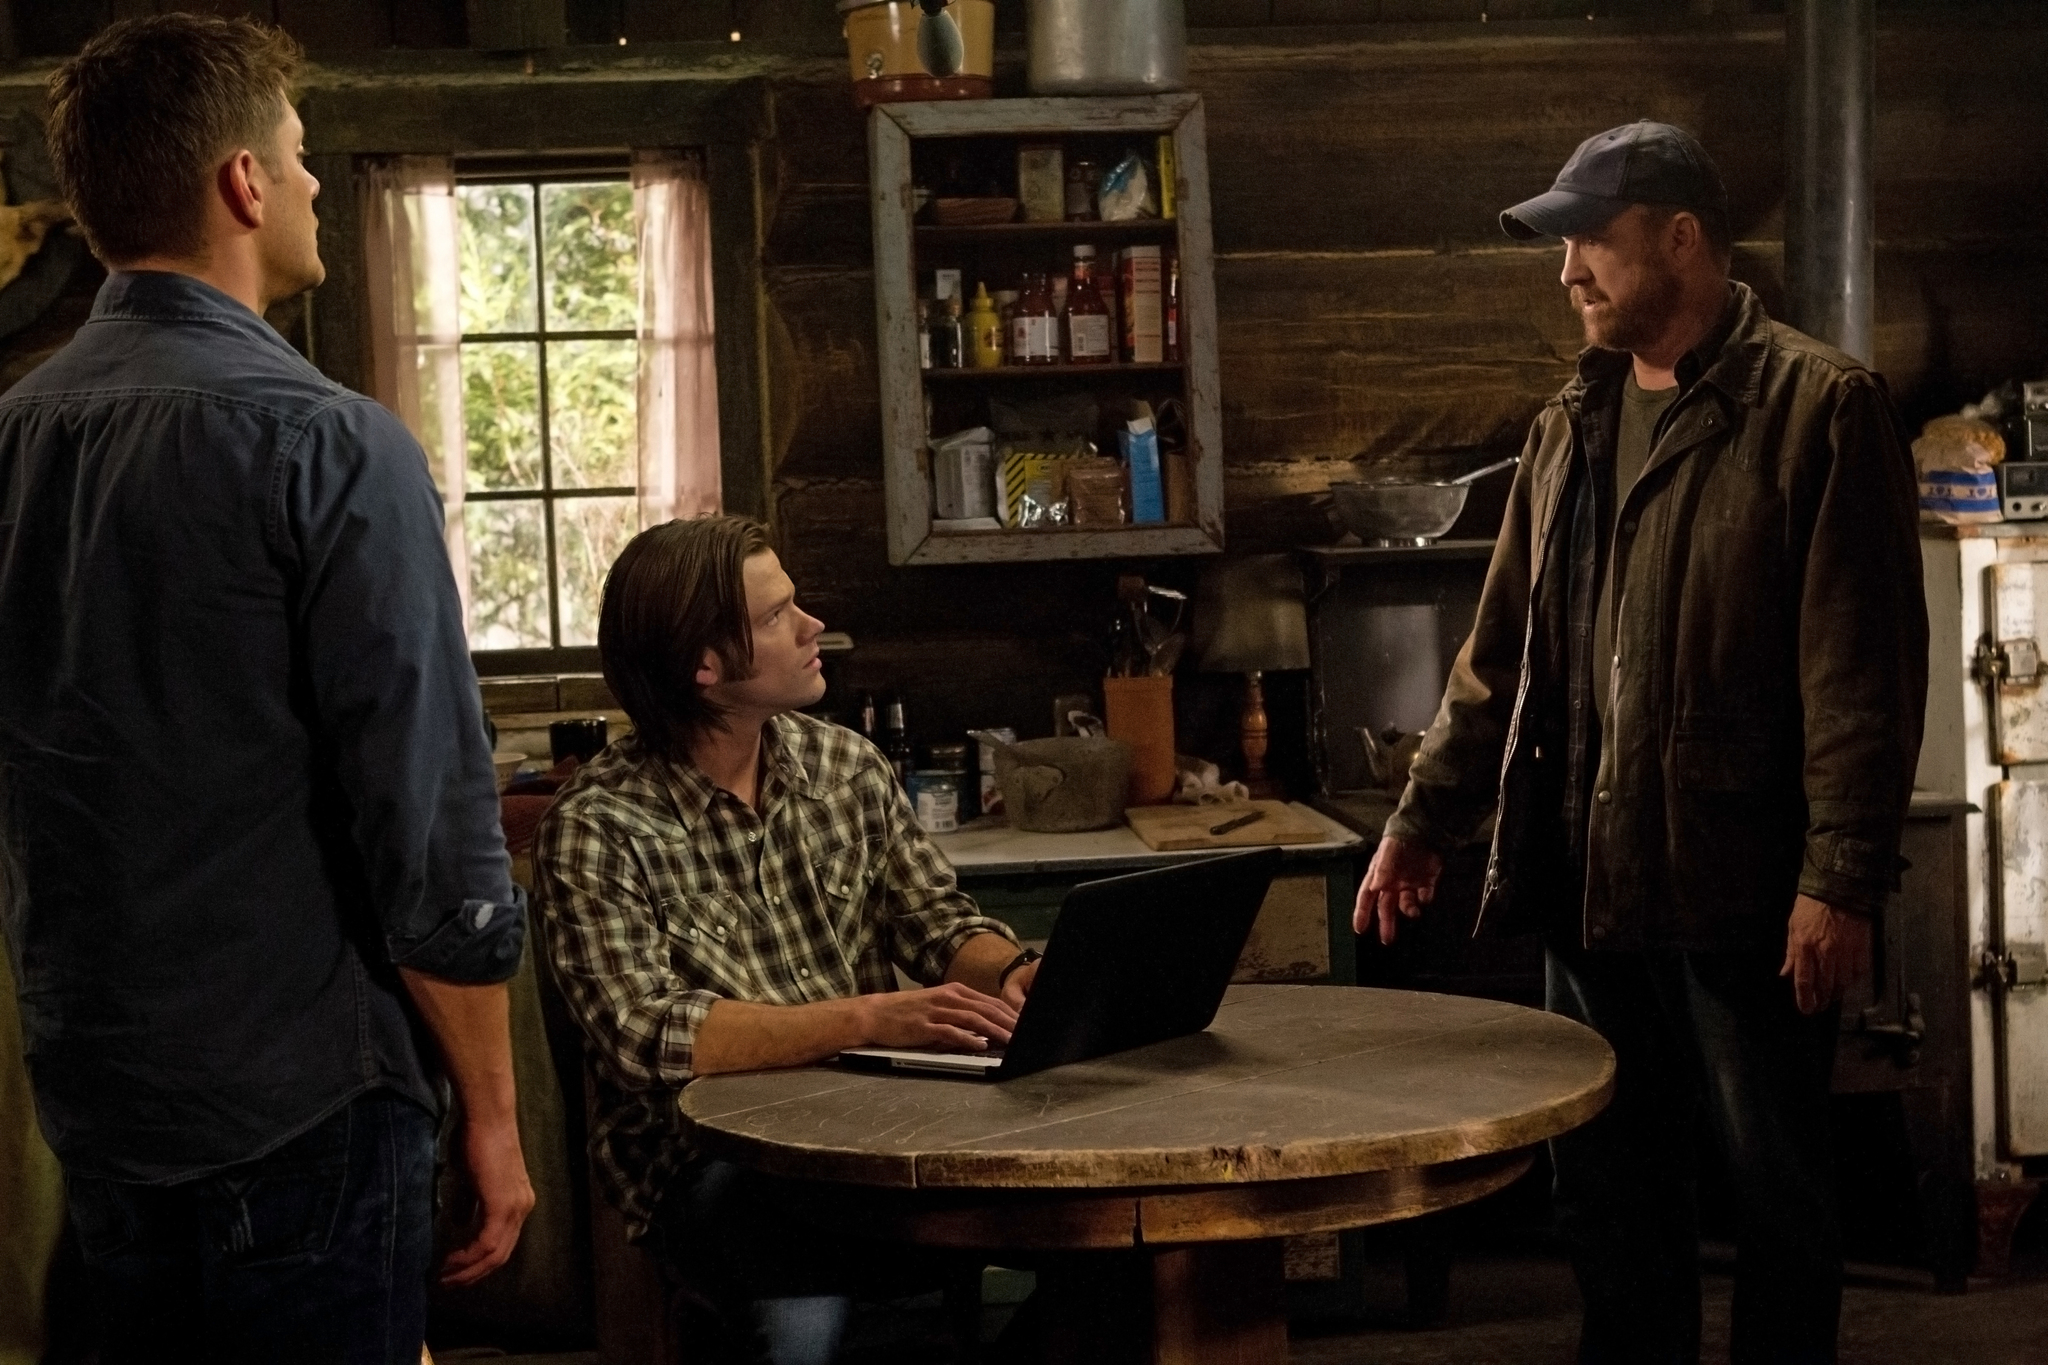 Still of Jensen Ackles, Jim Beaver and Jared Padalecki in Supernatural (2005)